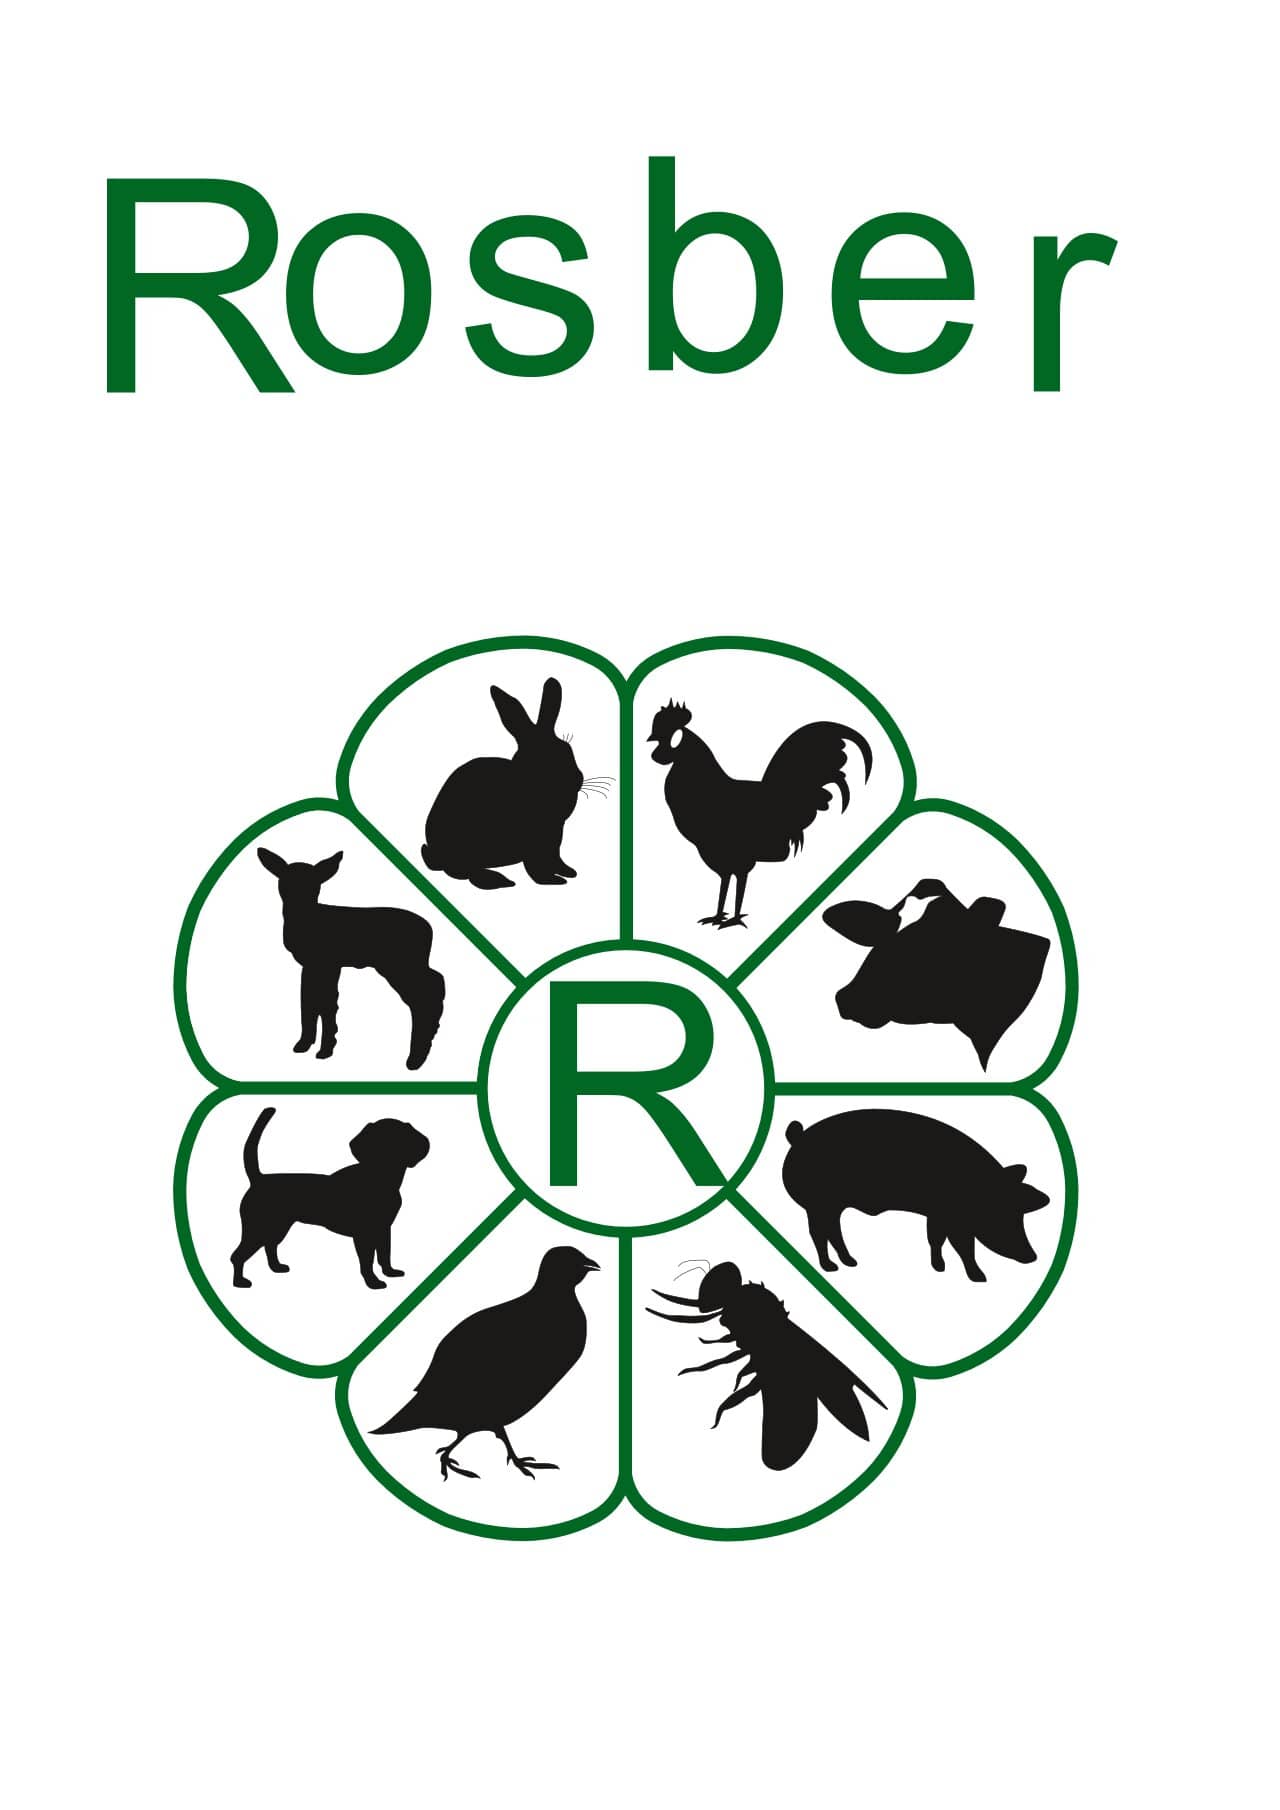 Rosber logo